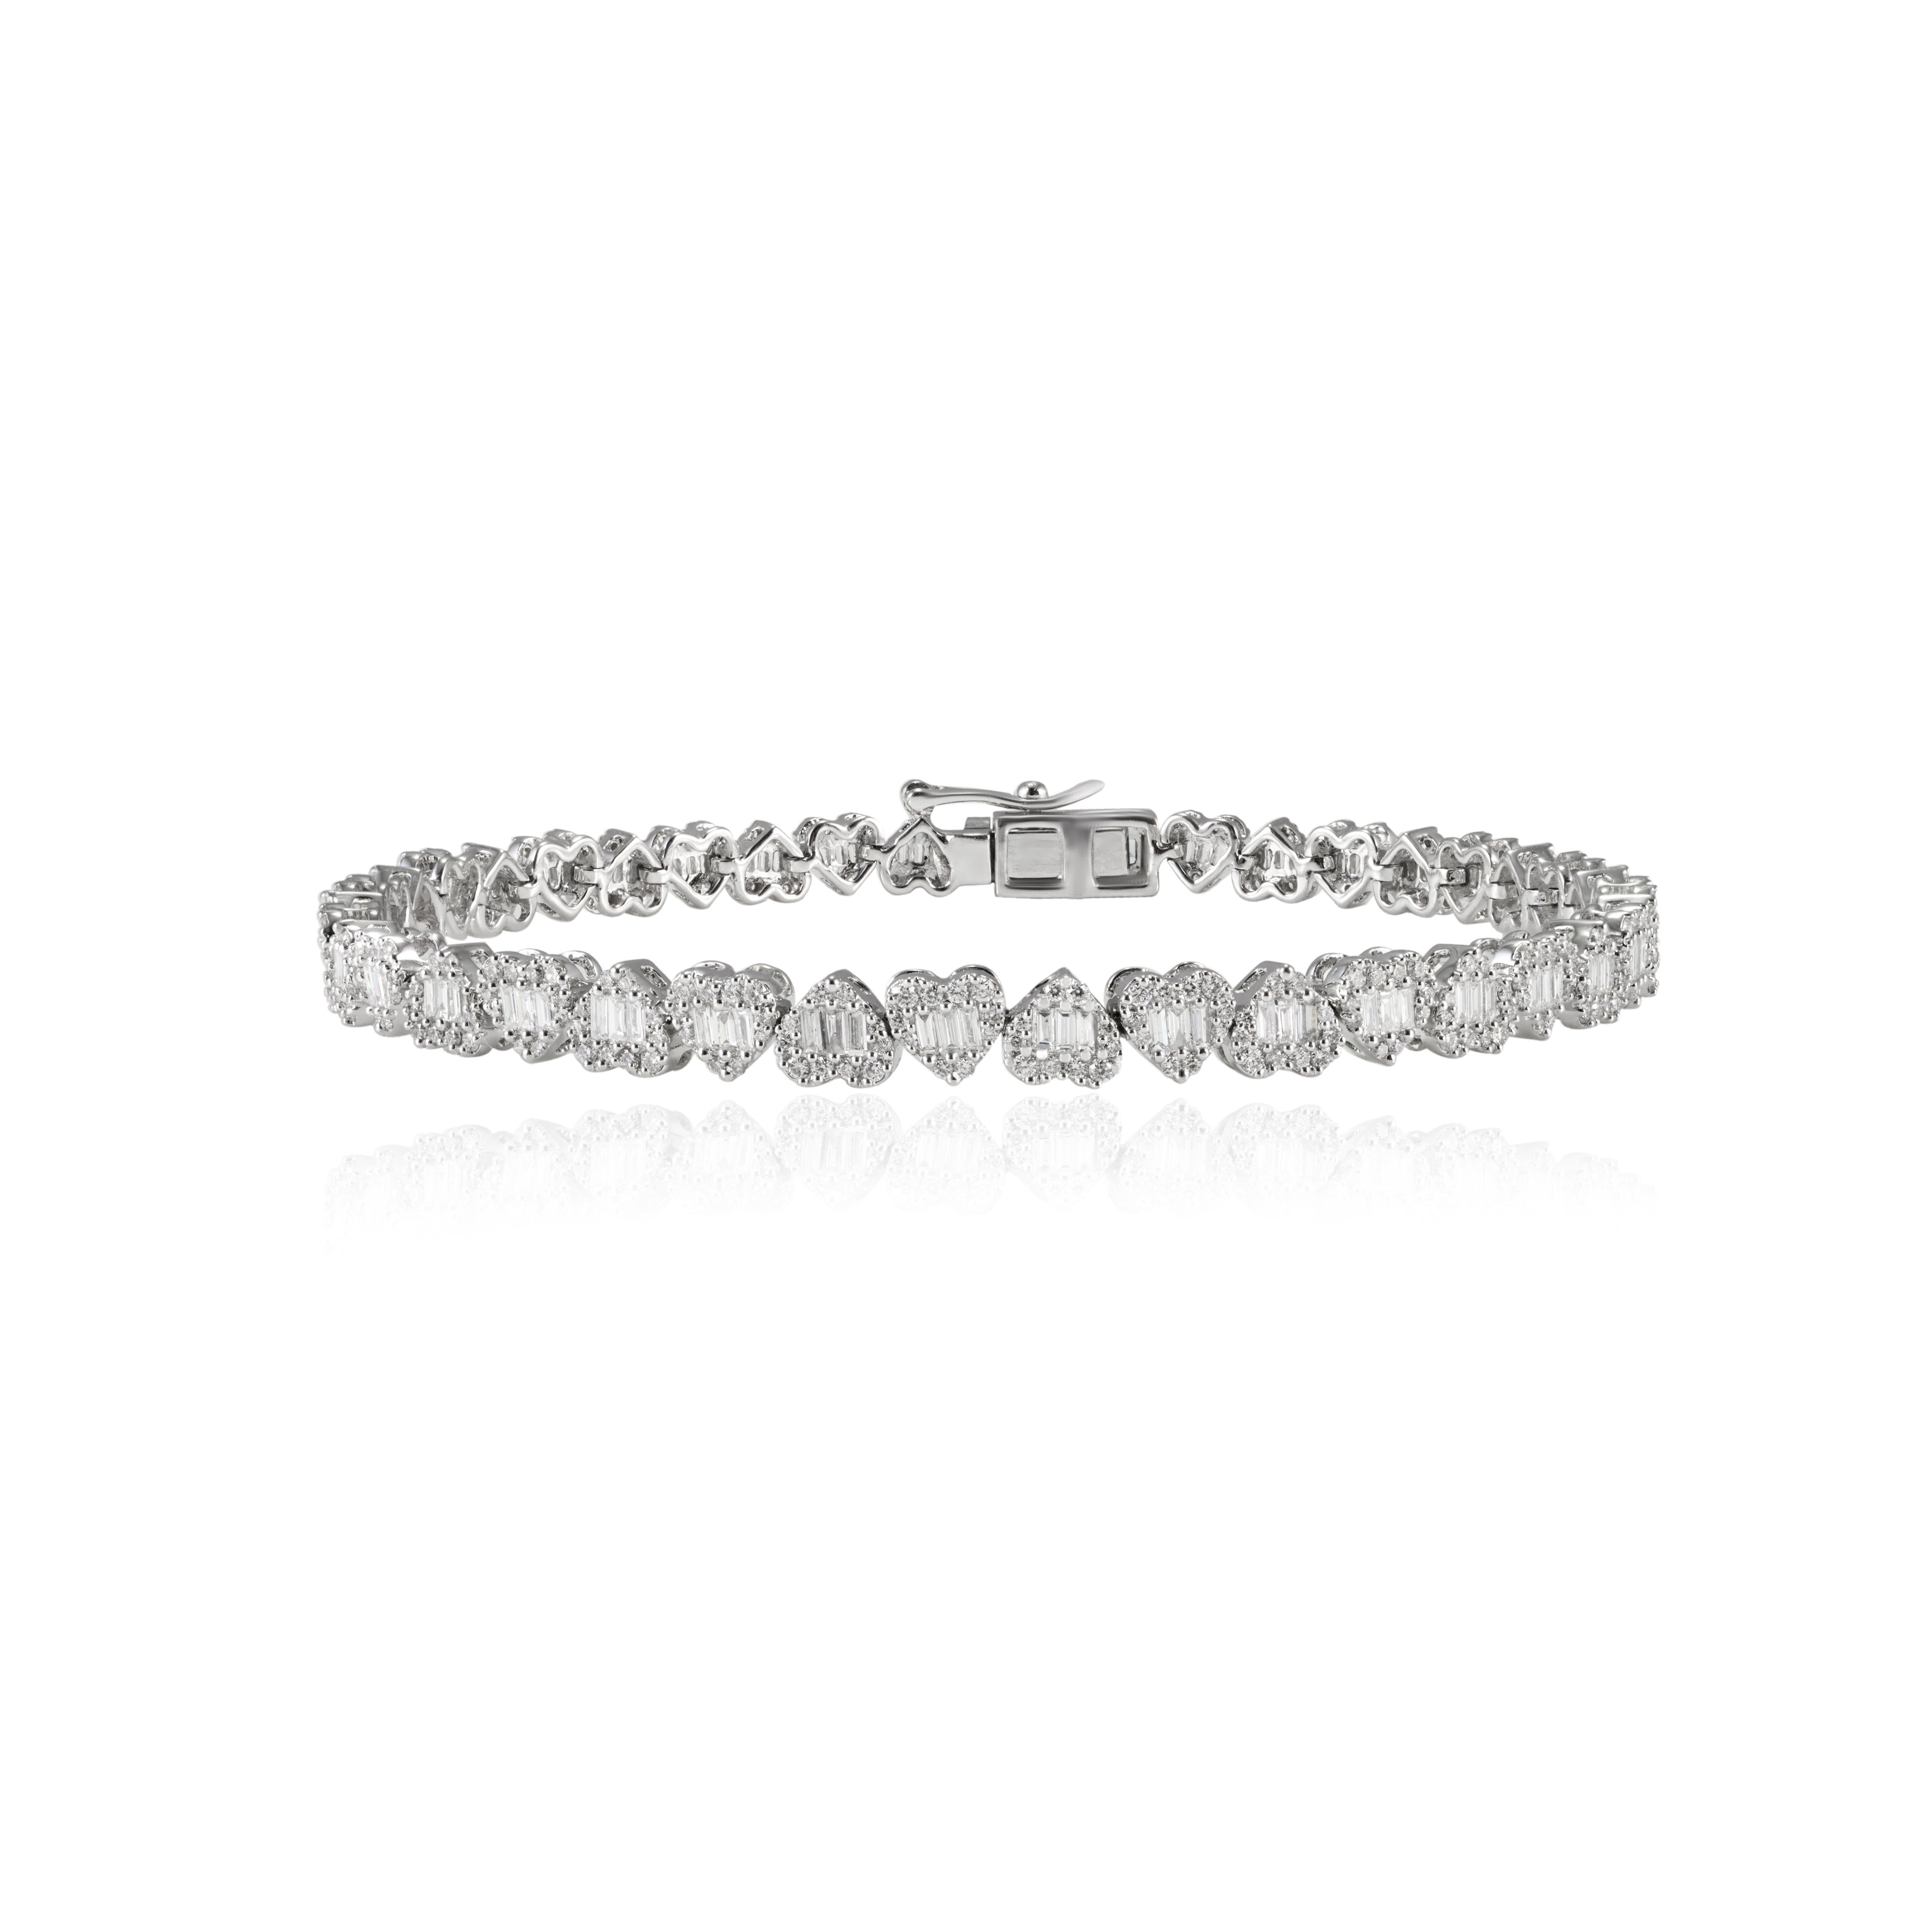 Ce Timeless Natural 2.11ct Diamond Heart Tennis Bracelet en or 18K met en valeur des diamants naturels étincelants, d'un poids de 2,11 carats. 
Le diamant, pierre de naissance du mois d'avril, apporte l'amour, la gloire, le succès et la